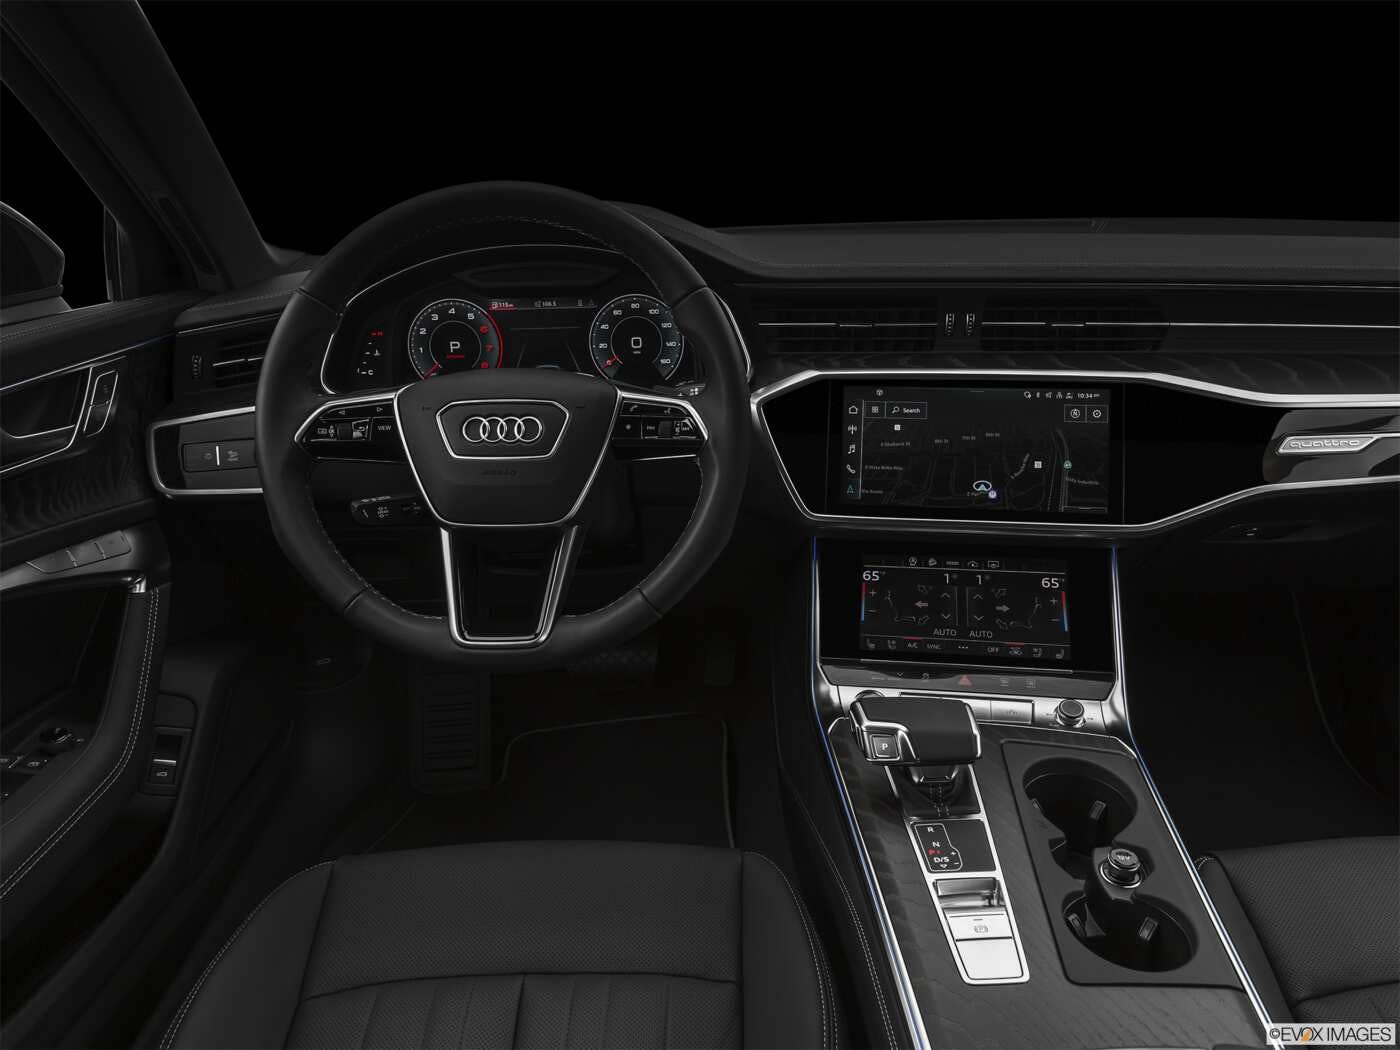 Bandit Revival block 2022 Audi A6 allroad Review | Pricing, Trims & Photos - TrueCar